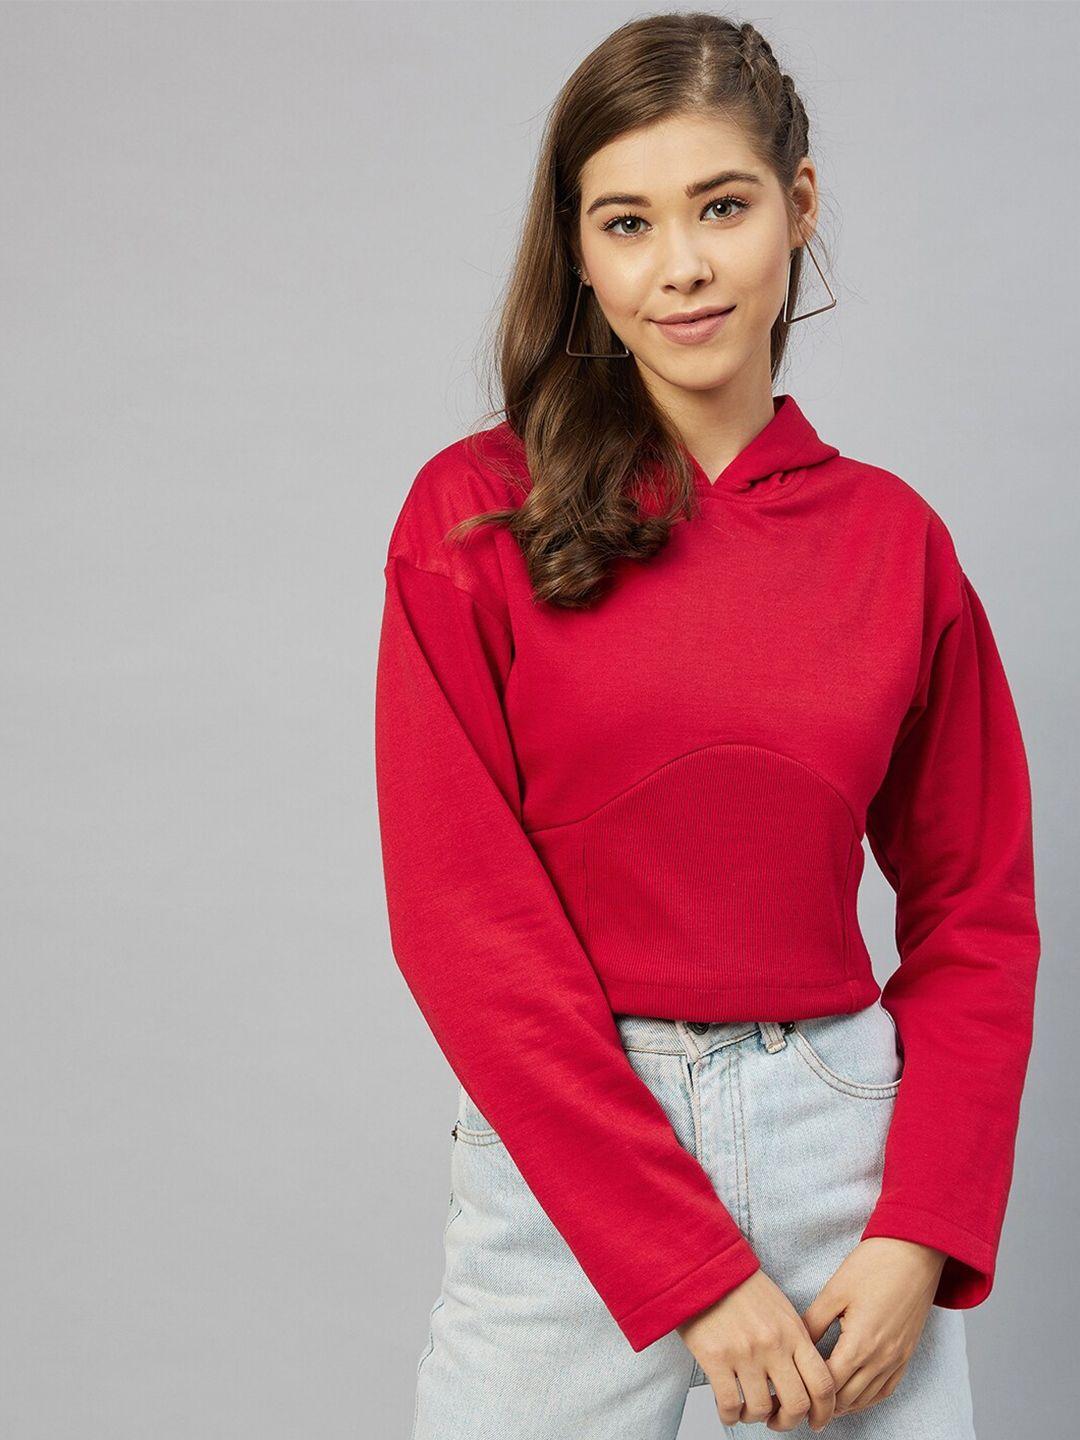 carlton-london-women-red-crop-hooded-sweatshirt